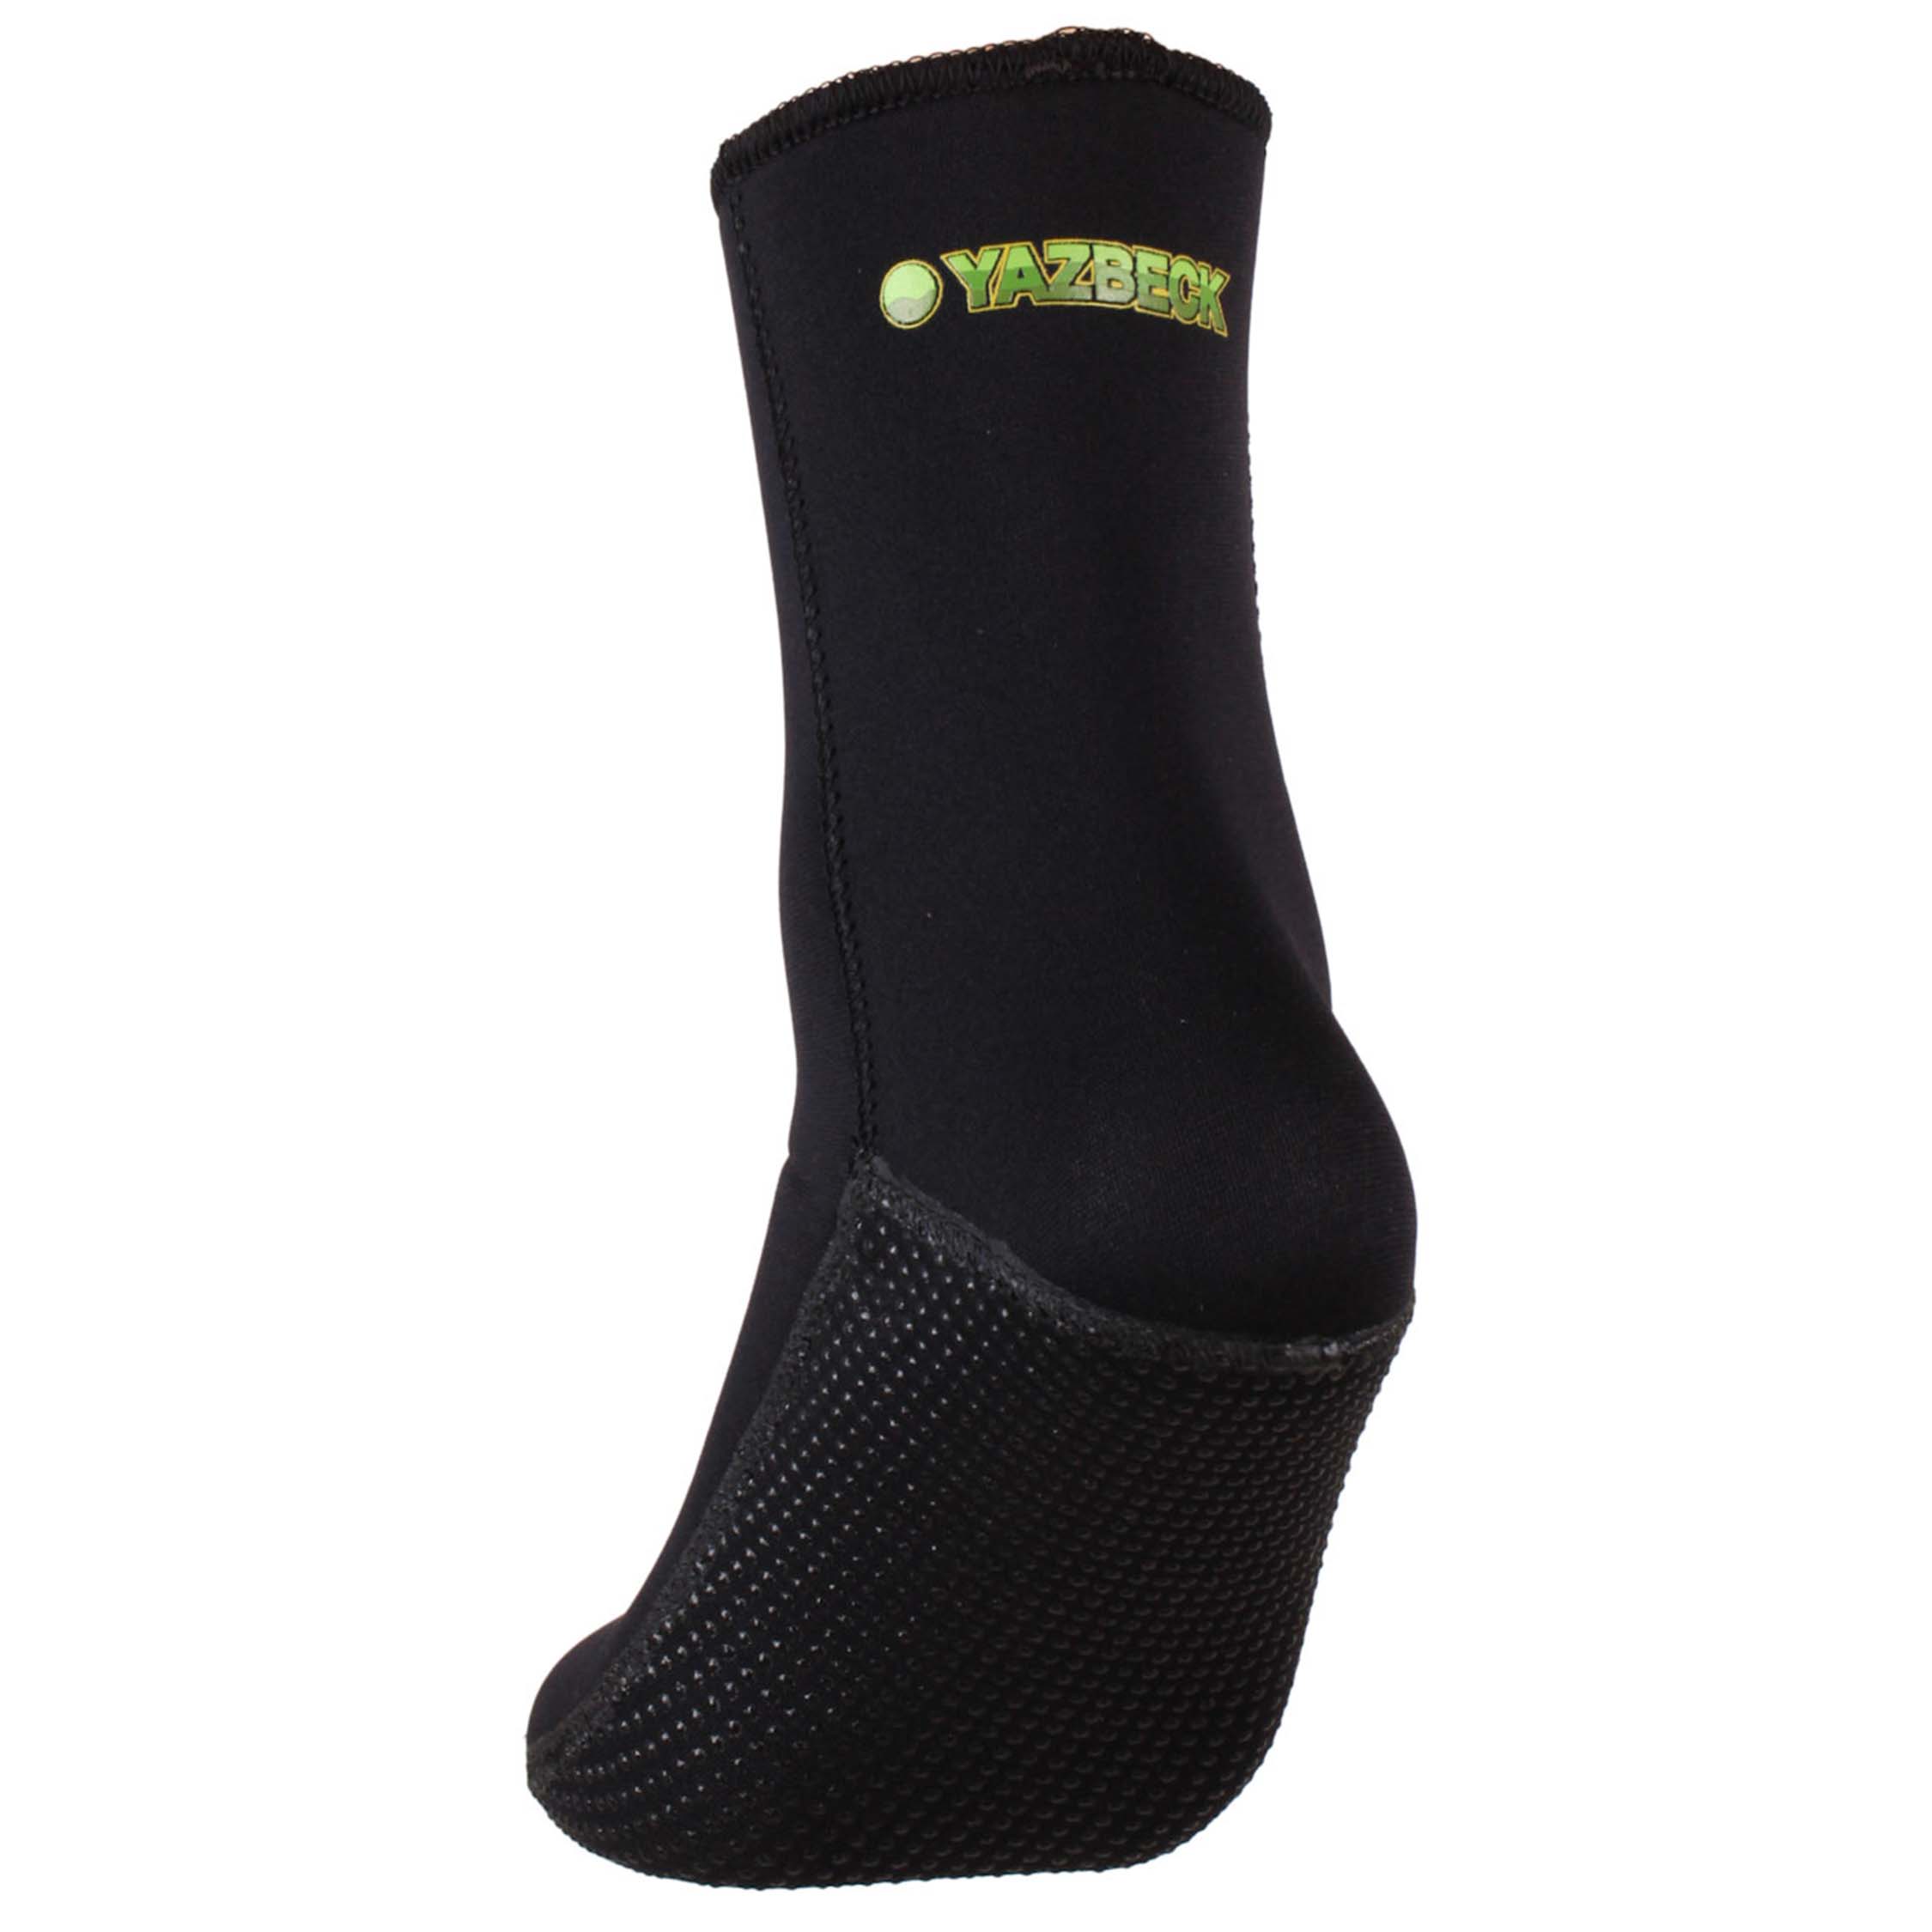 All-Black Thermoflex Socks –